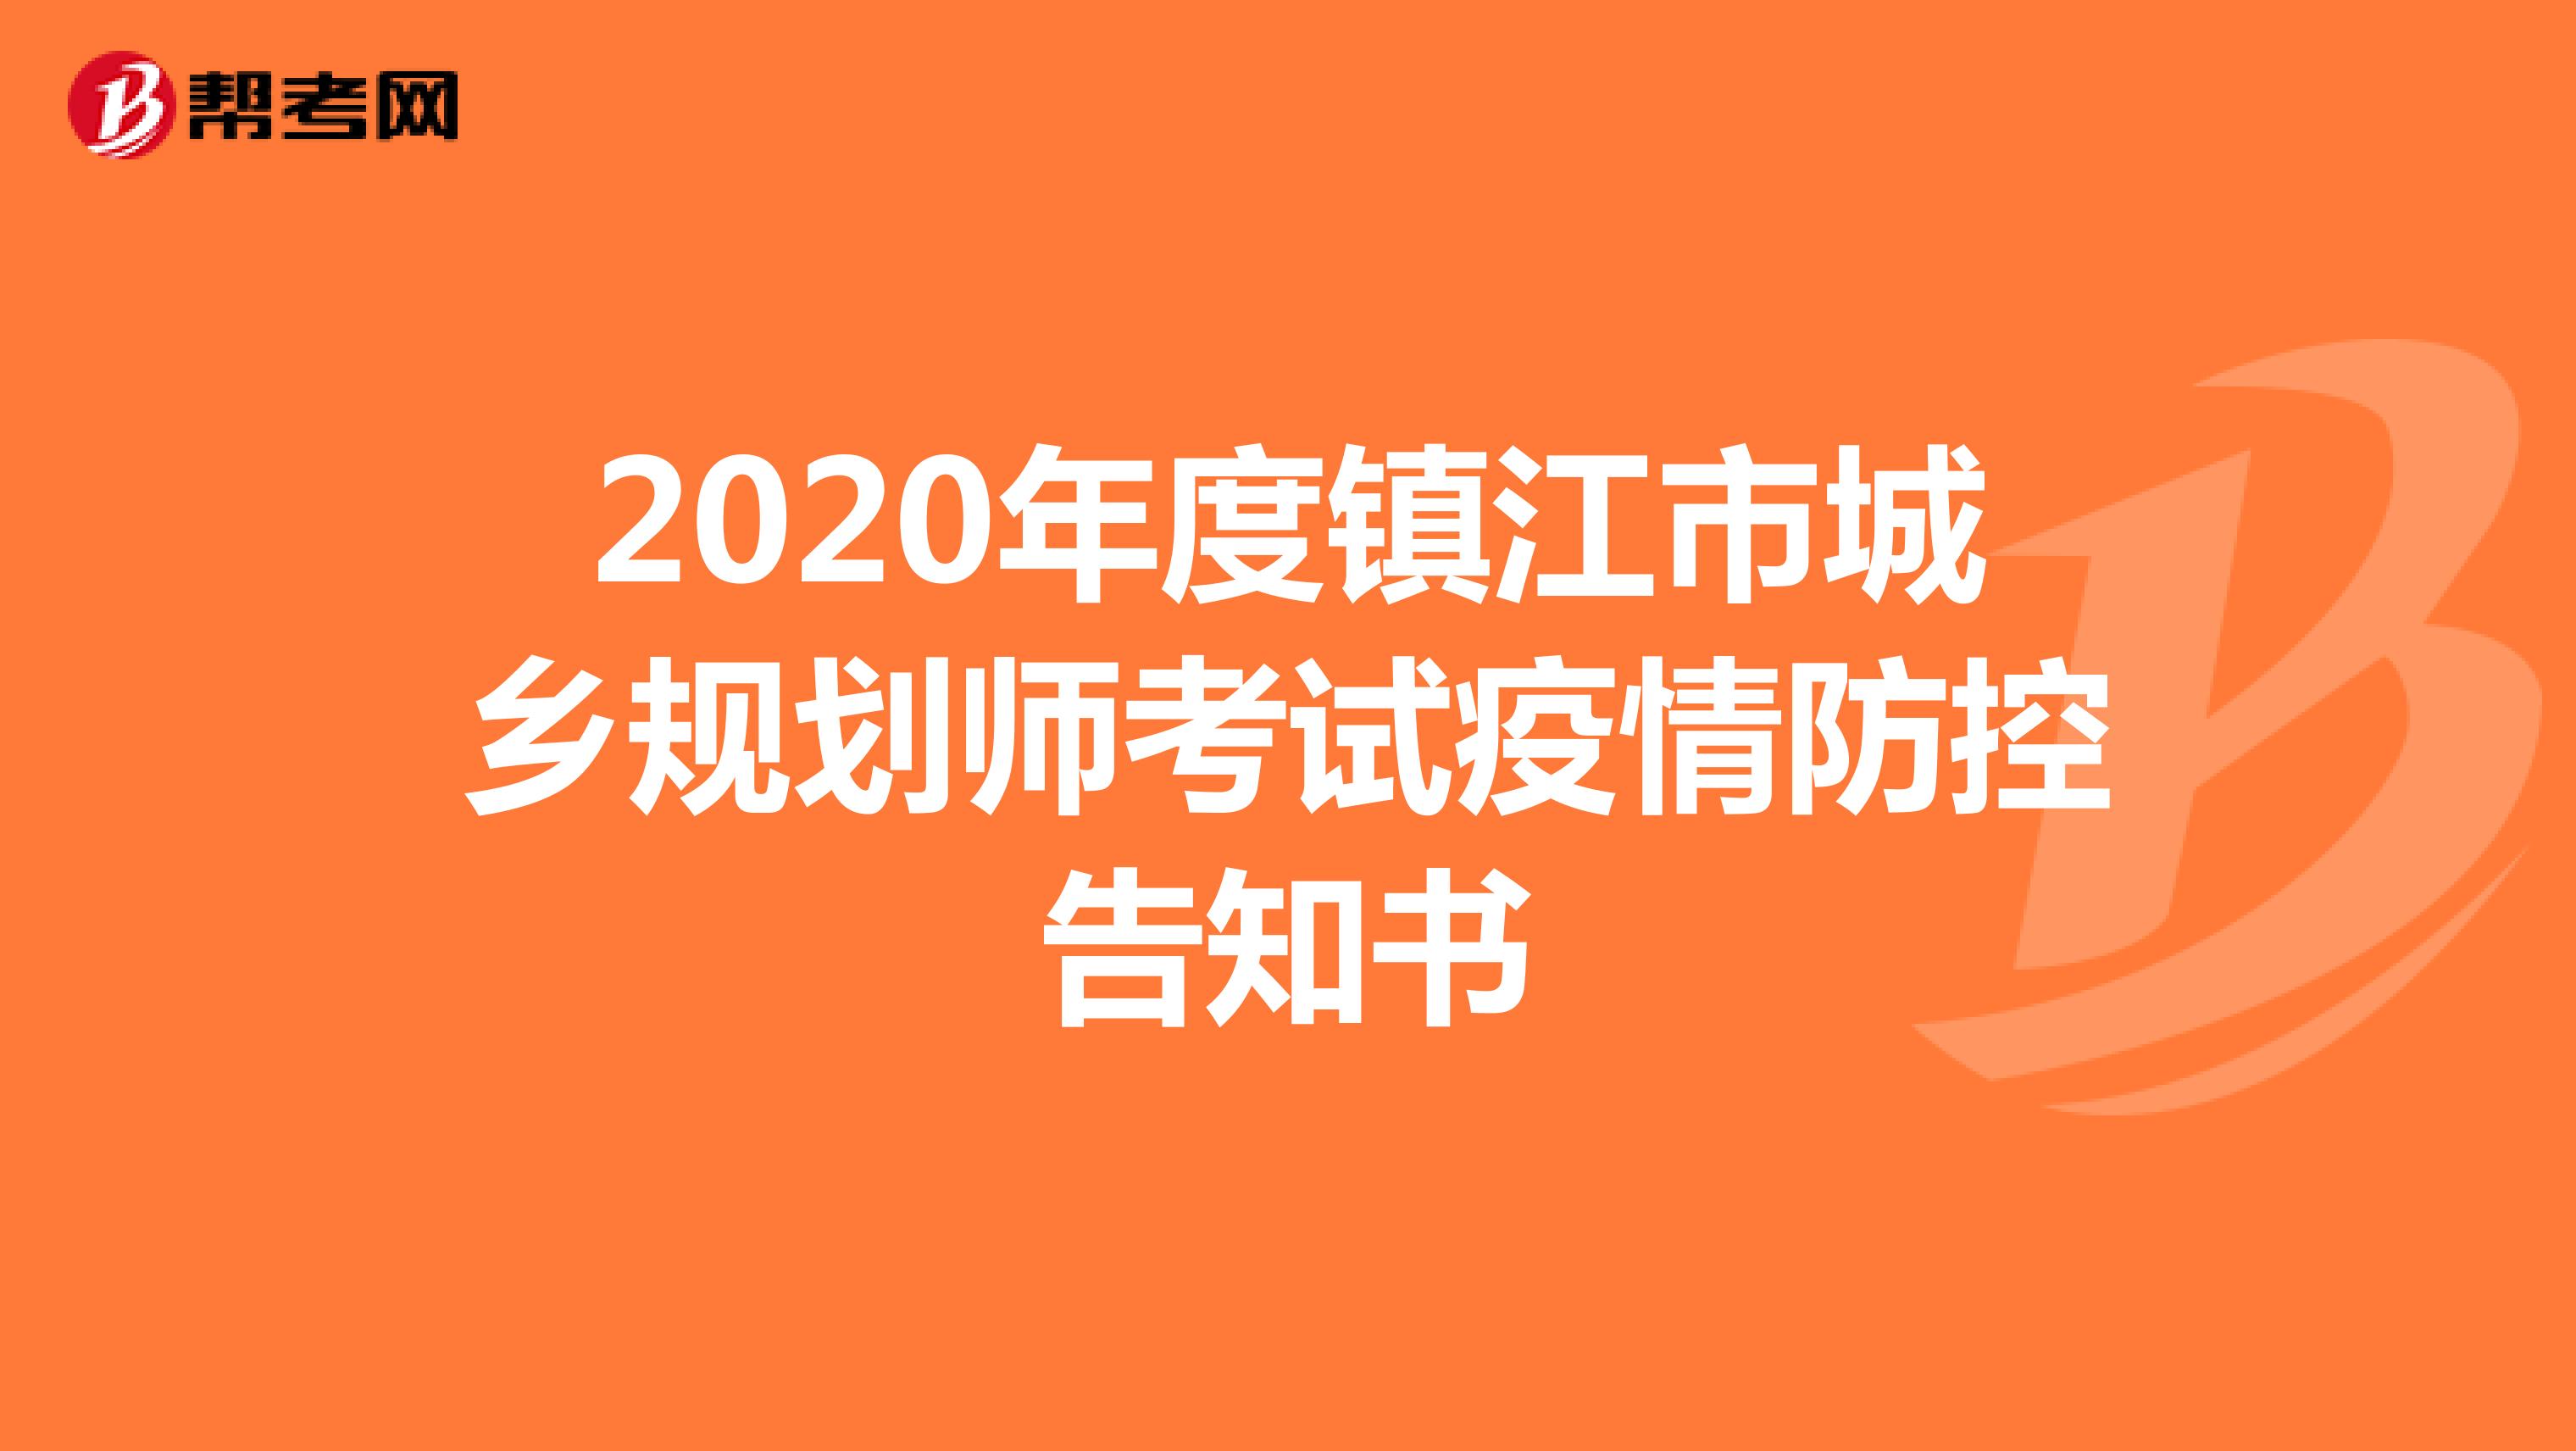 2020年度镇江市城乡规划师考试疫情防控告知书